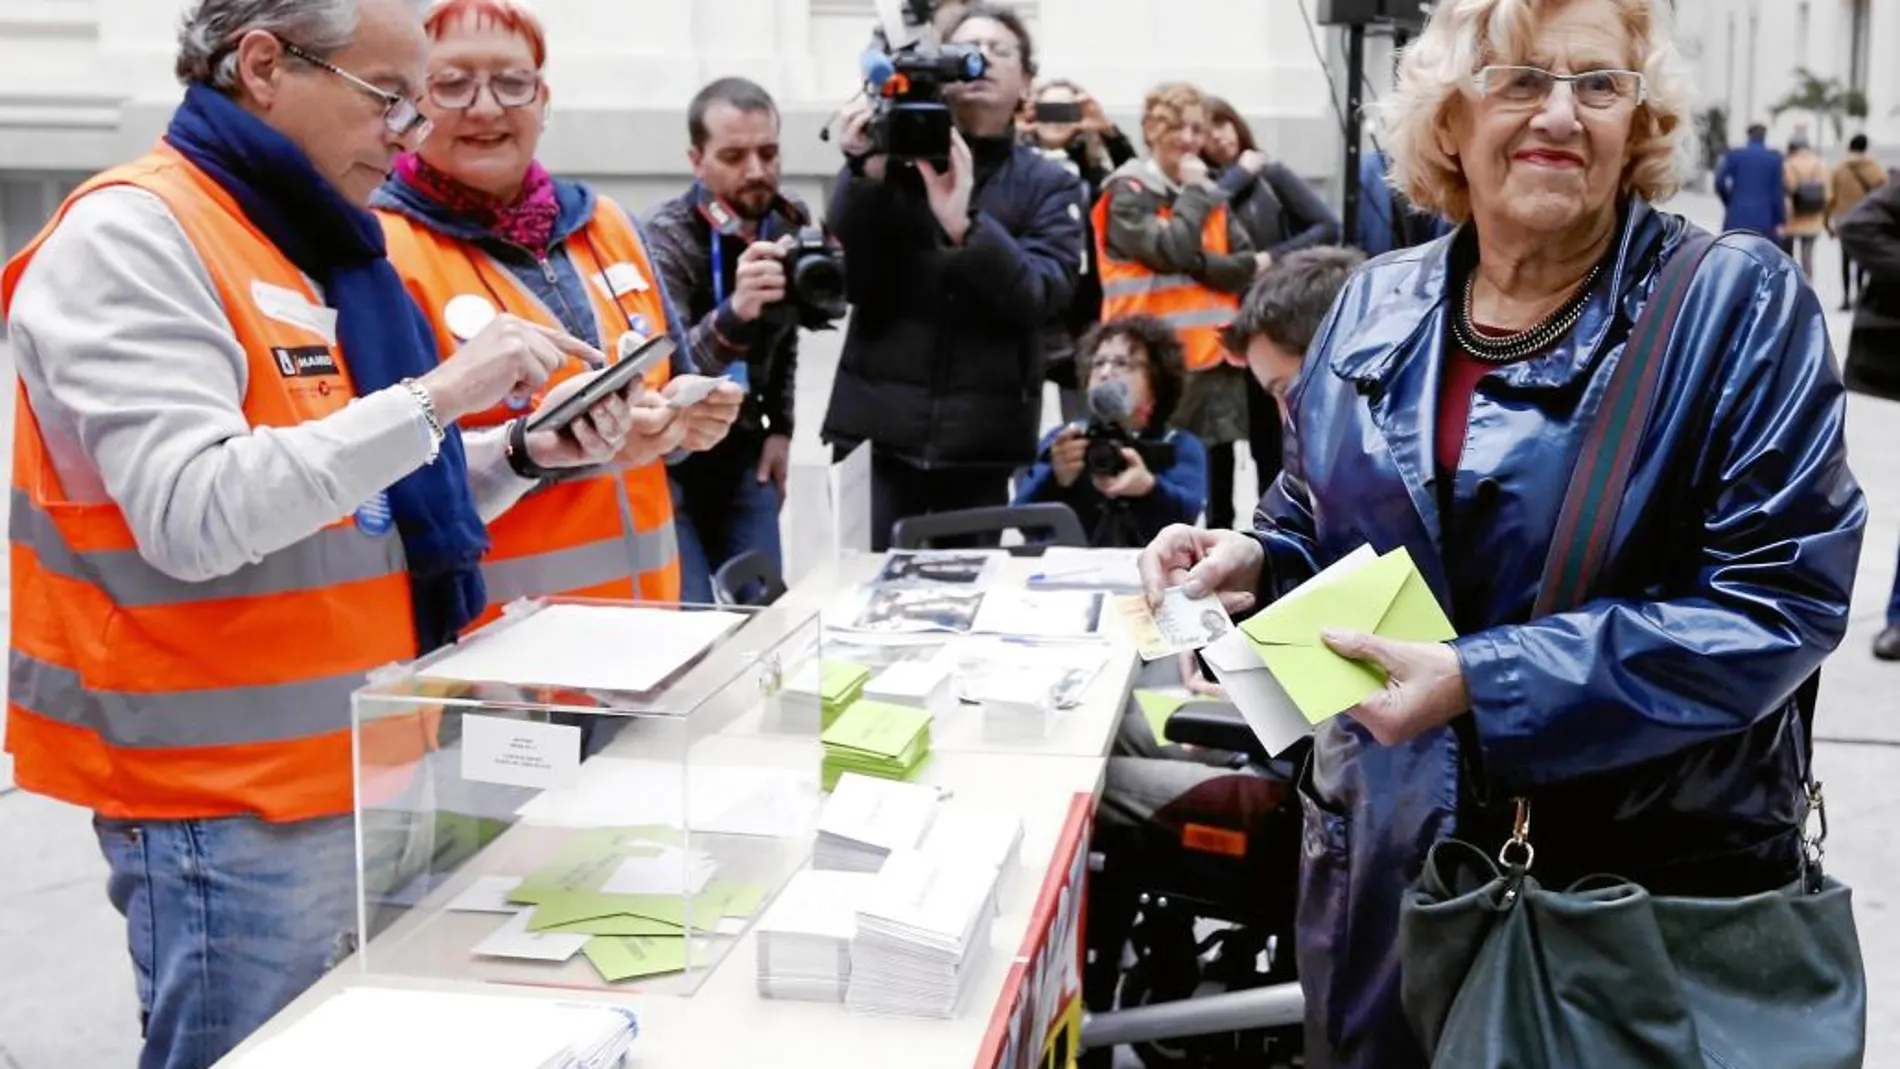 La alcaldesa de Madrid, Manuela Carmena, acudió ayer a votar a la urna instalada en Cibeles